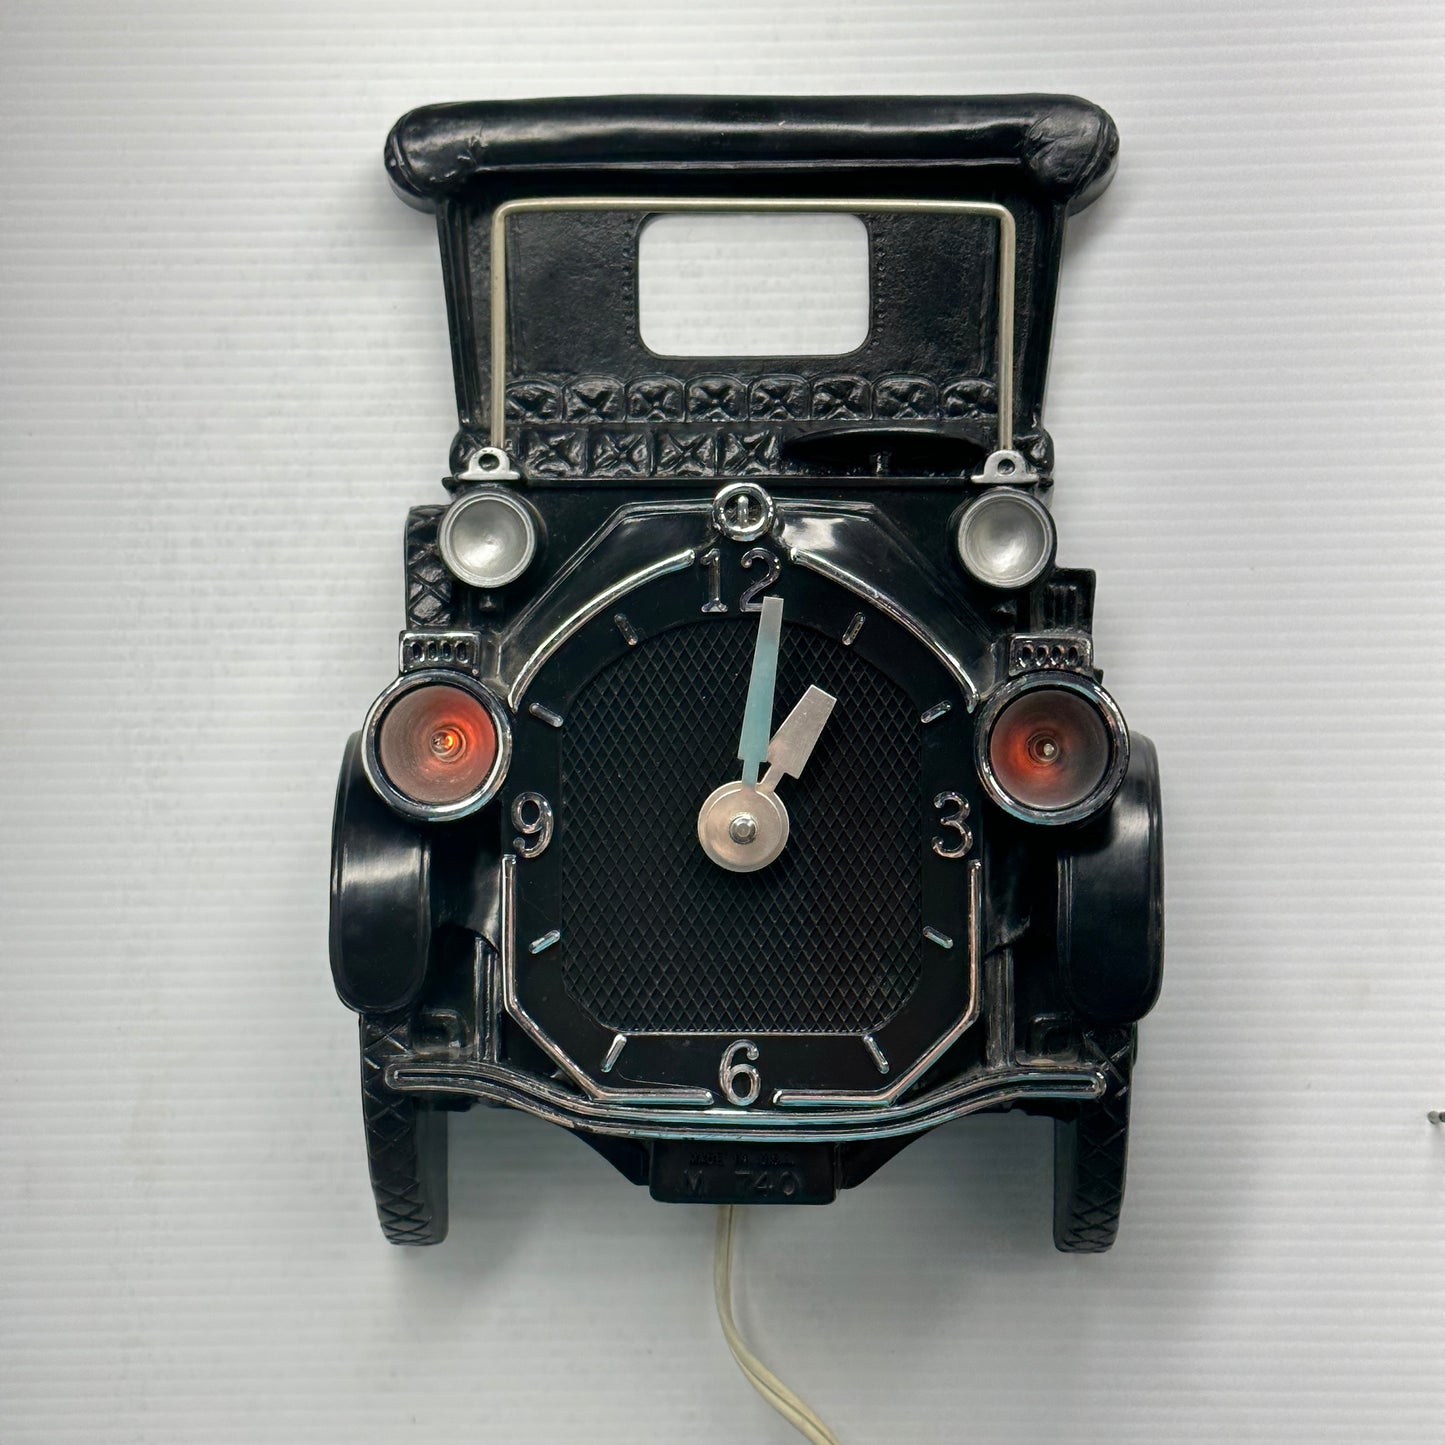 Mastercrafters Model 740 “Antique Car” Wall Clock